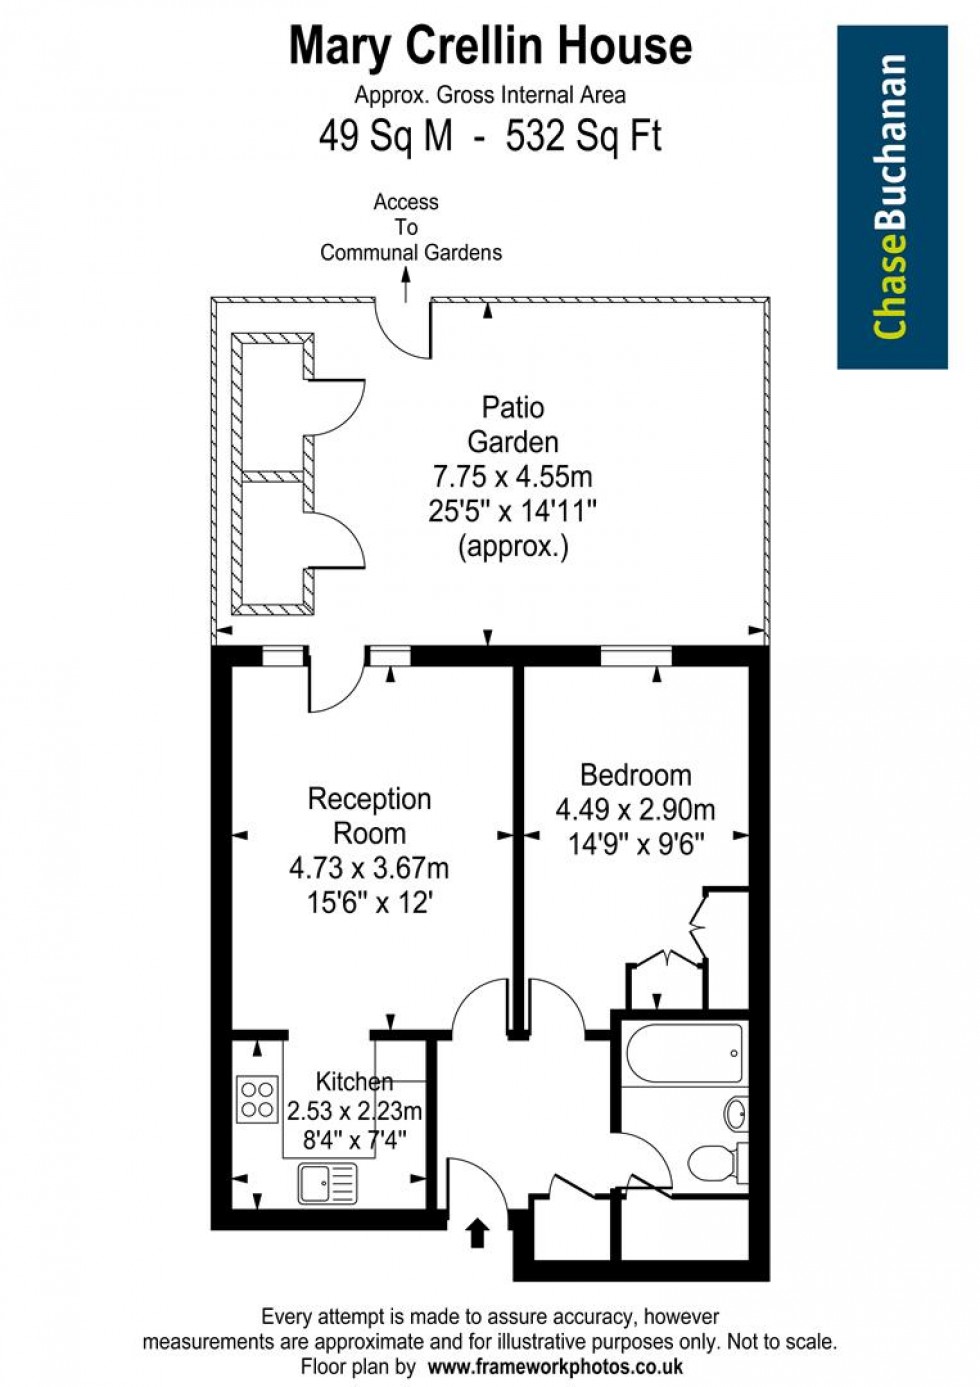 Floorplan for Mary Crellin House, Teddington